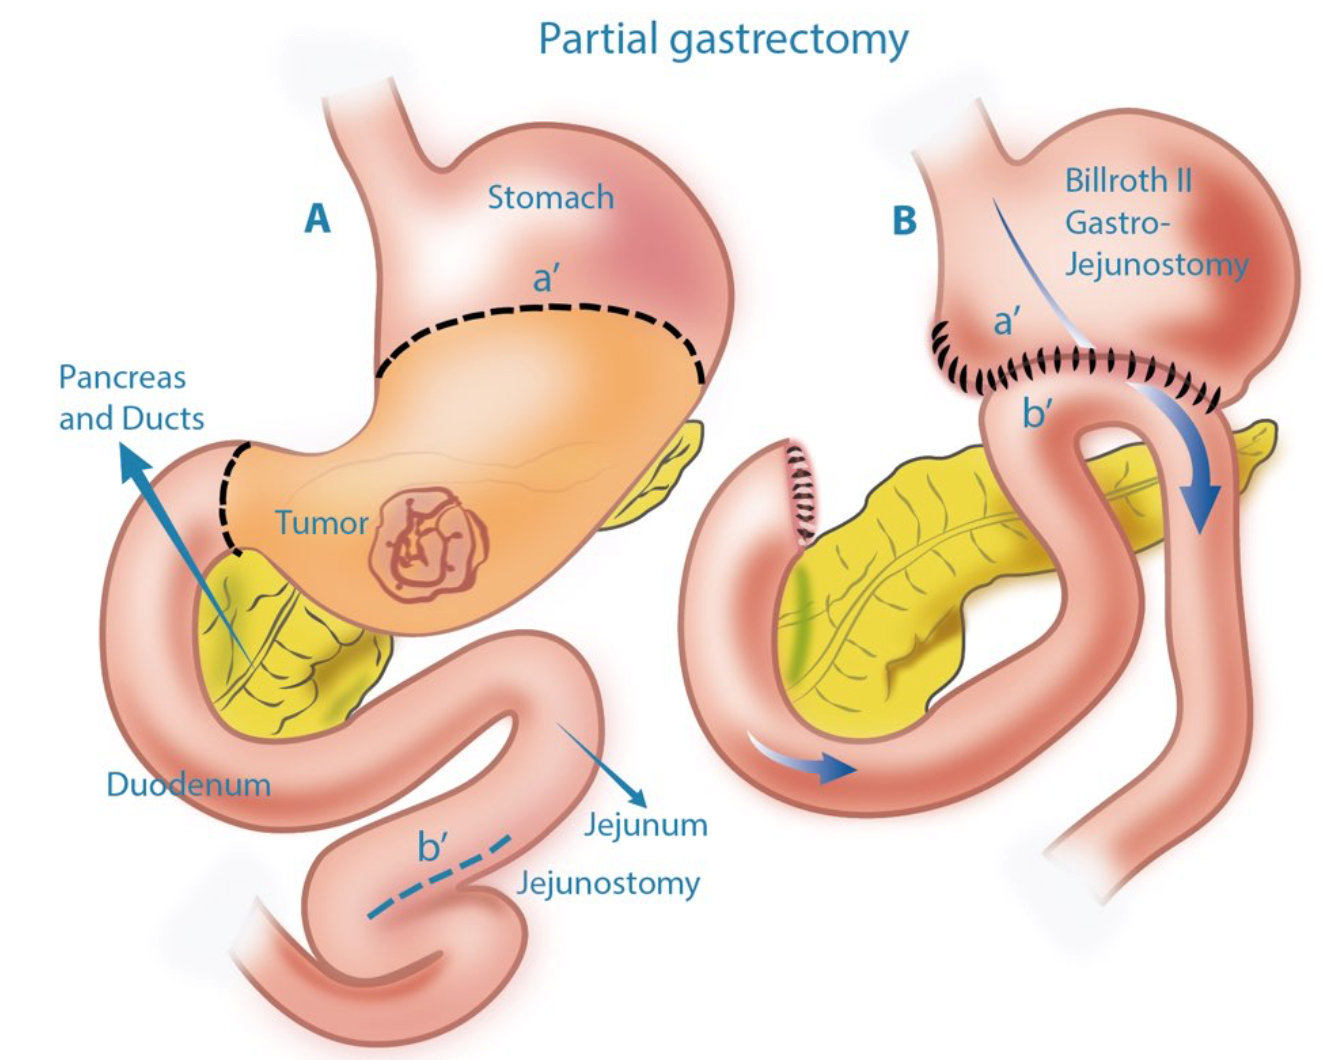 Partial Gastrectomy